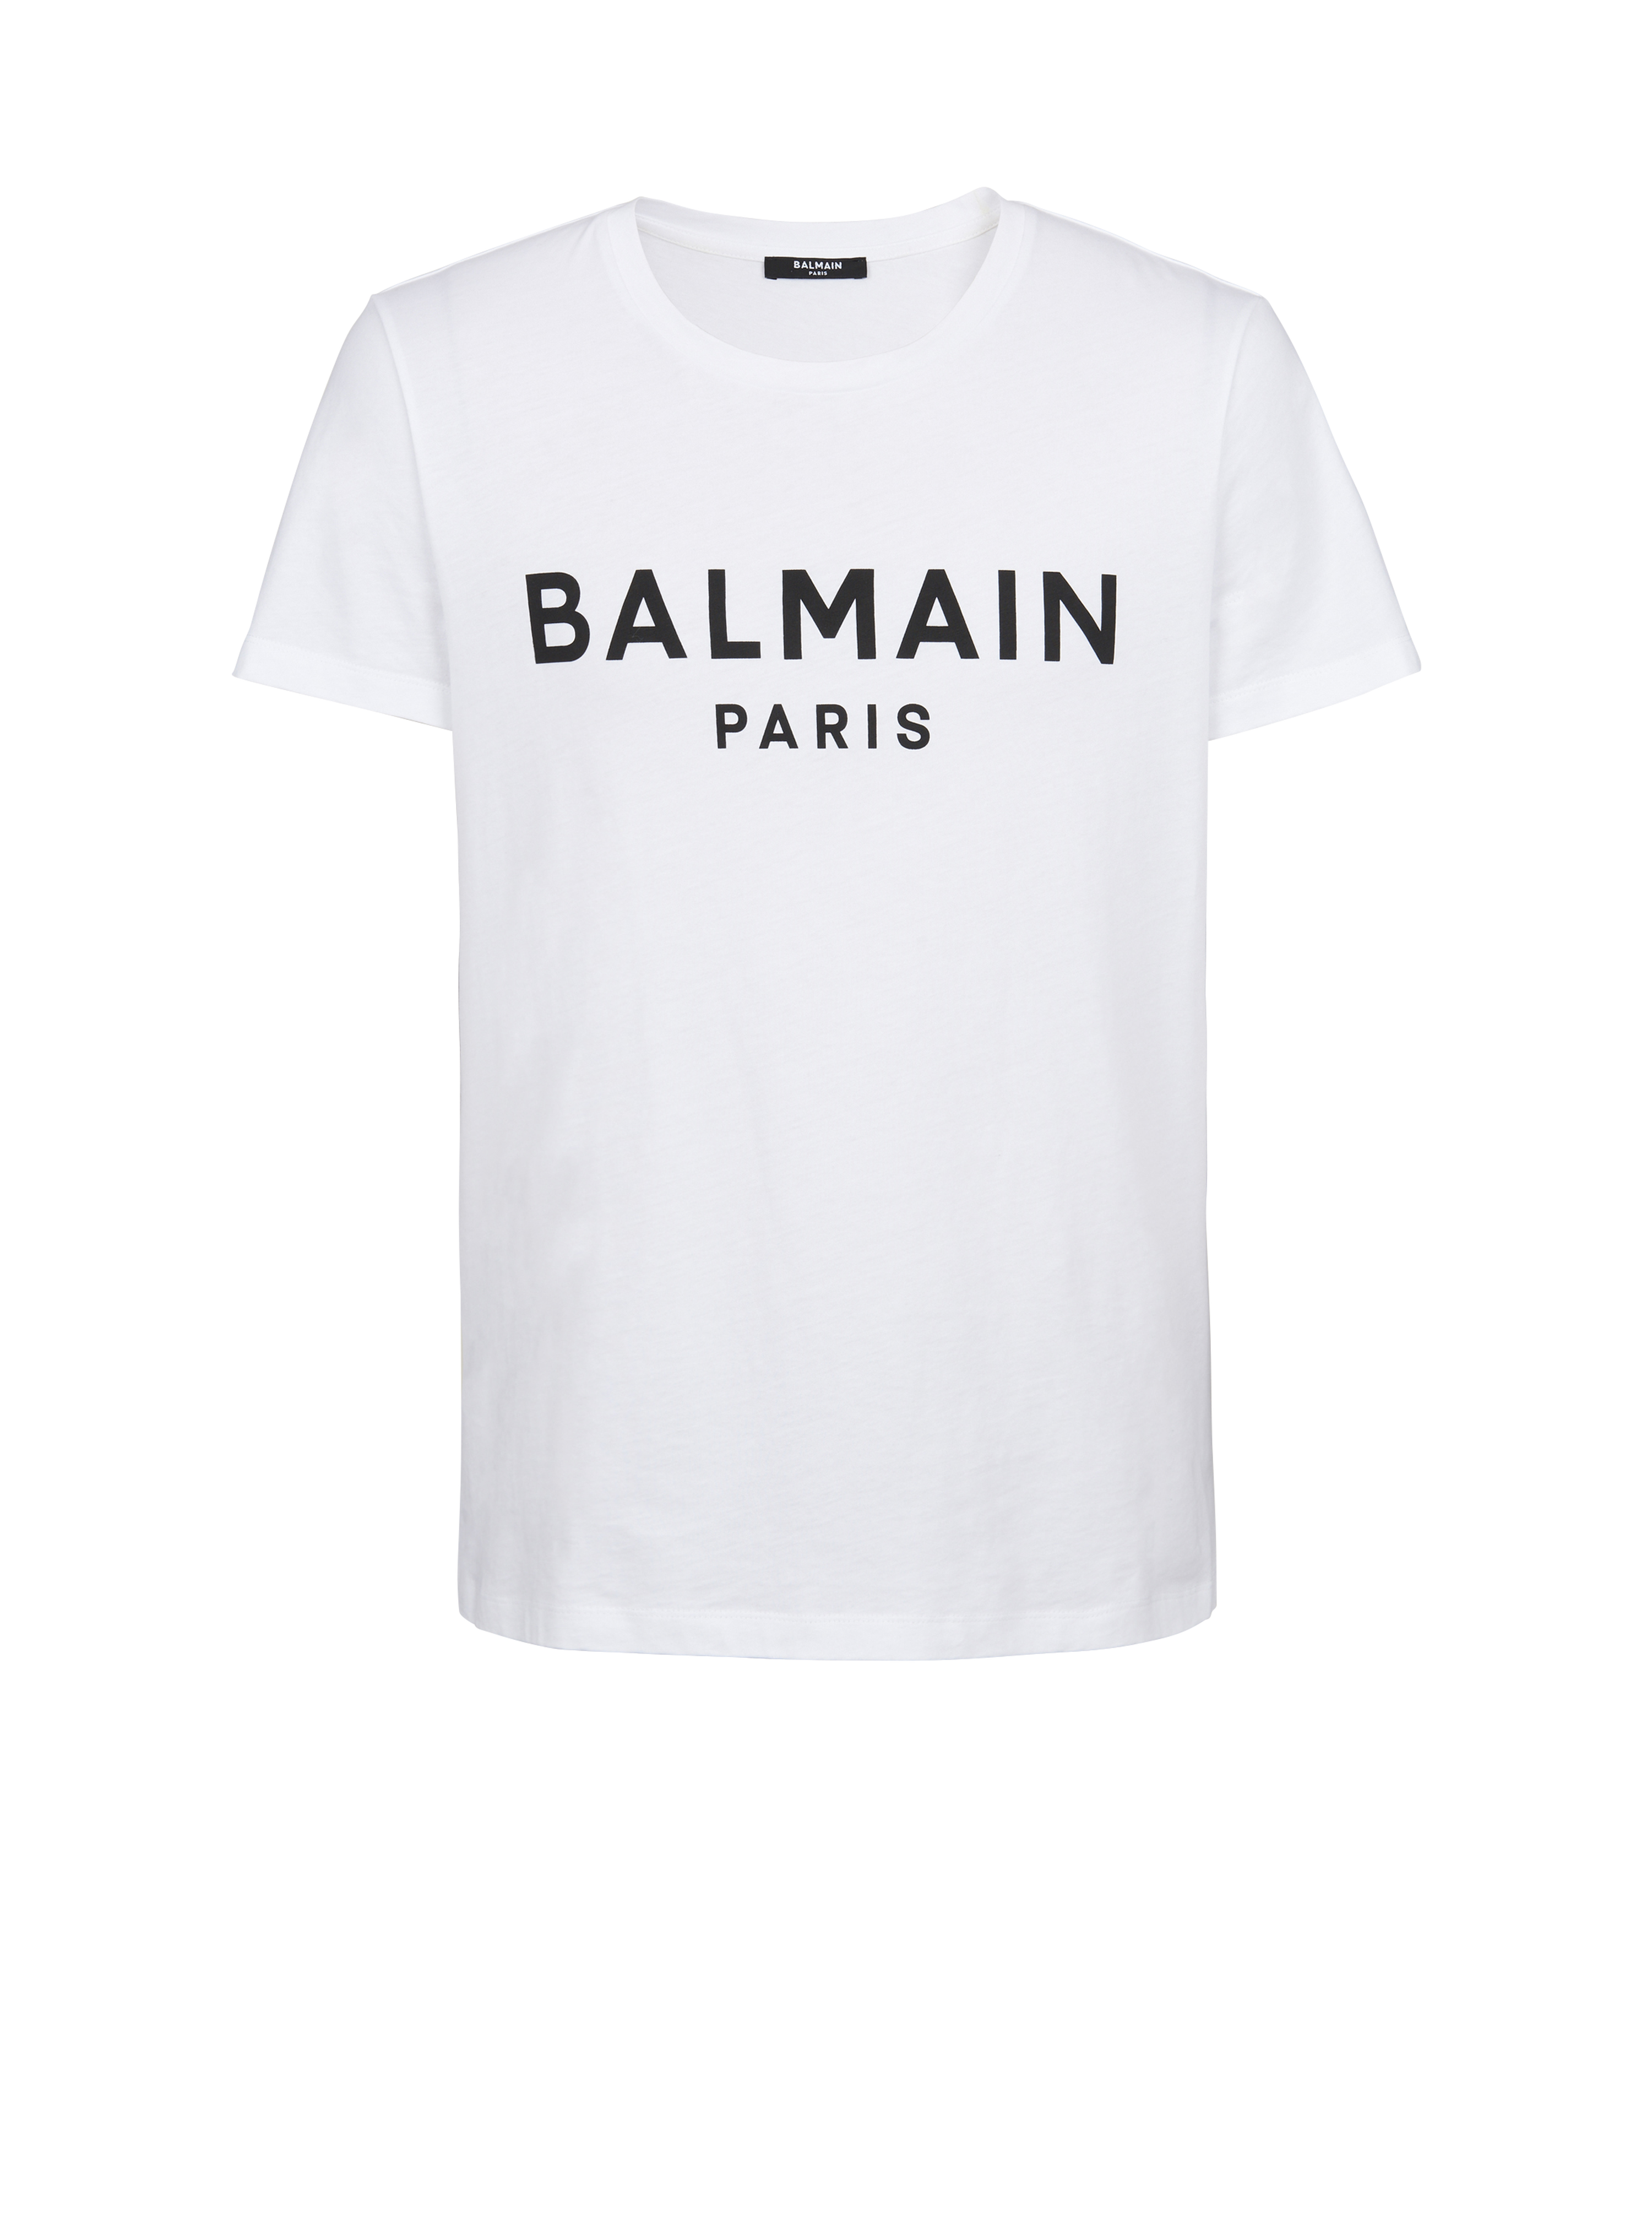 Eco-responsible cotton T-shirt with Balmain logo print, white